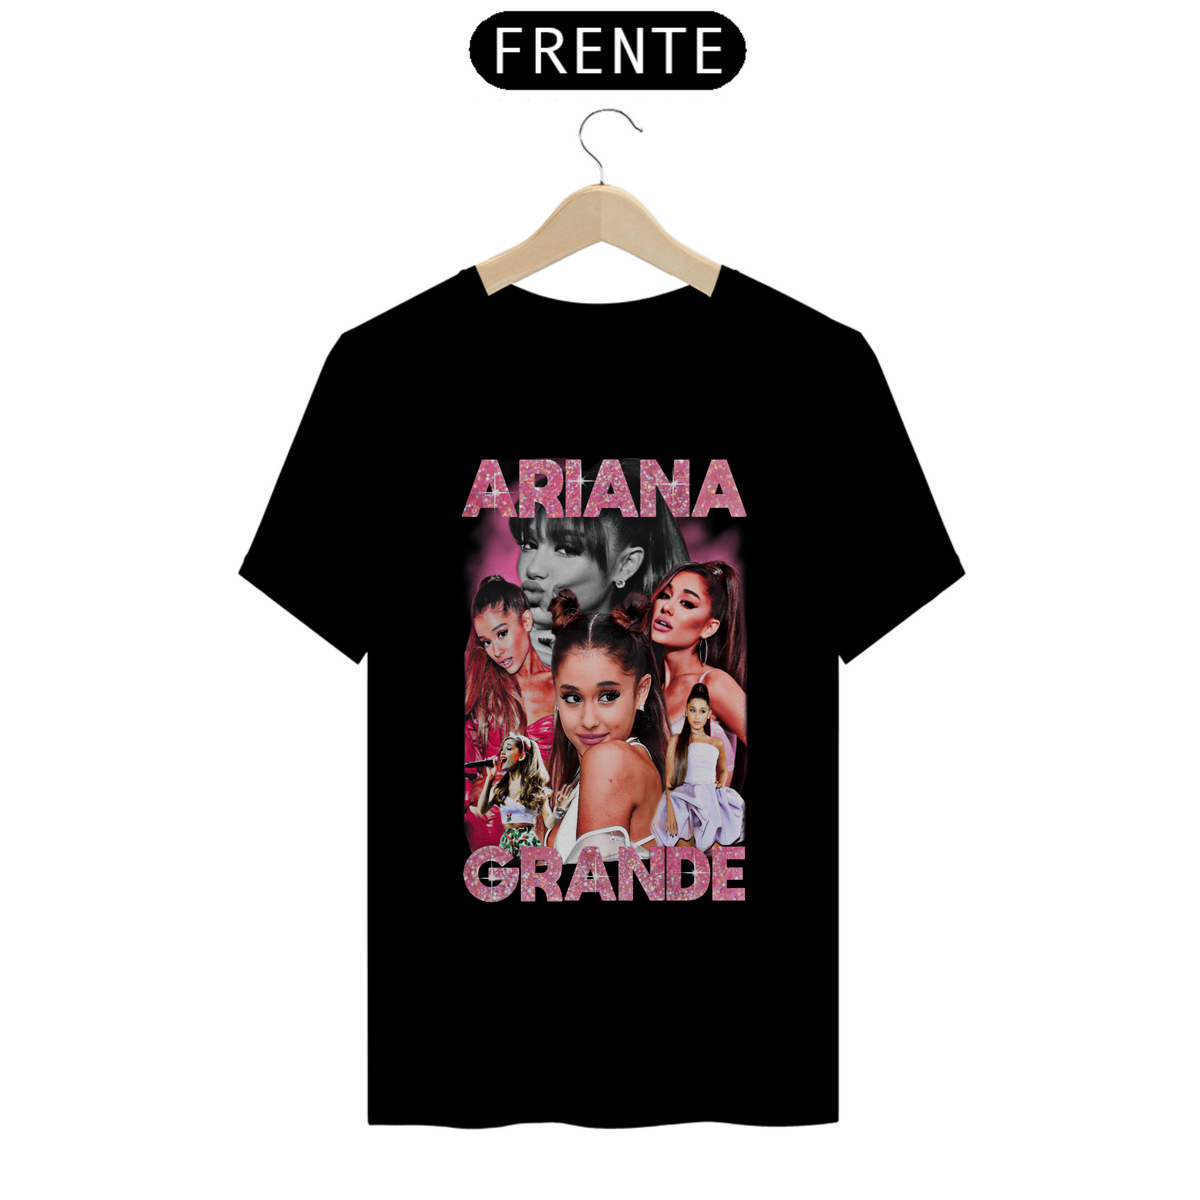 Nome do produto: Camiseta Quality - Ariana Grande